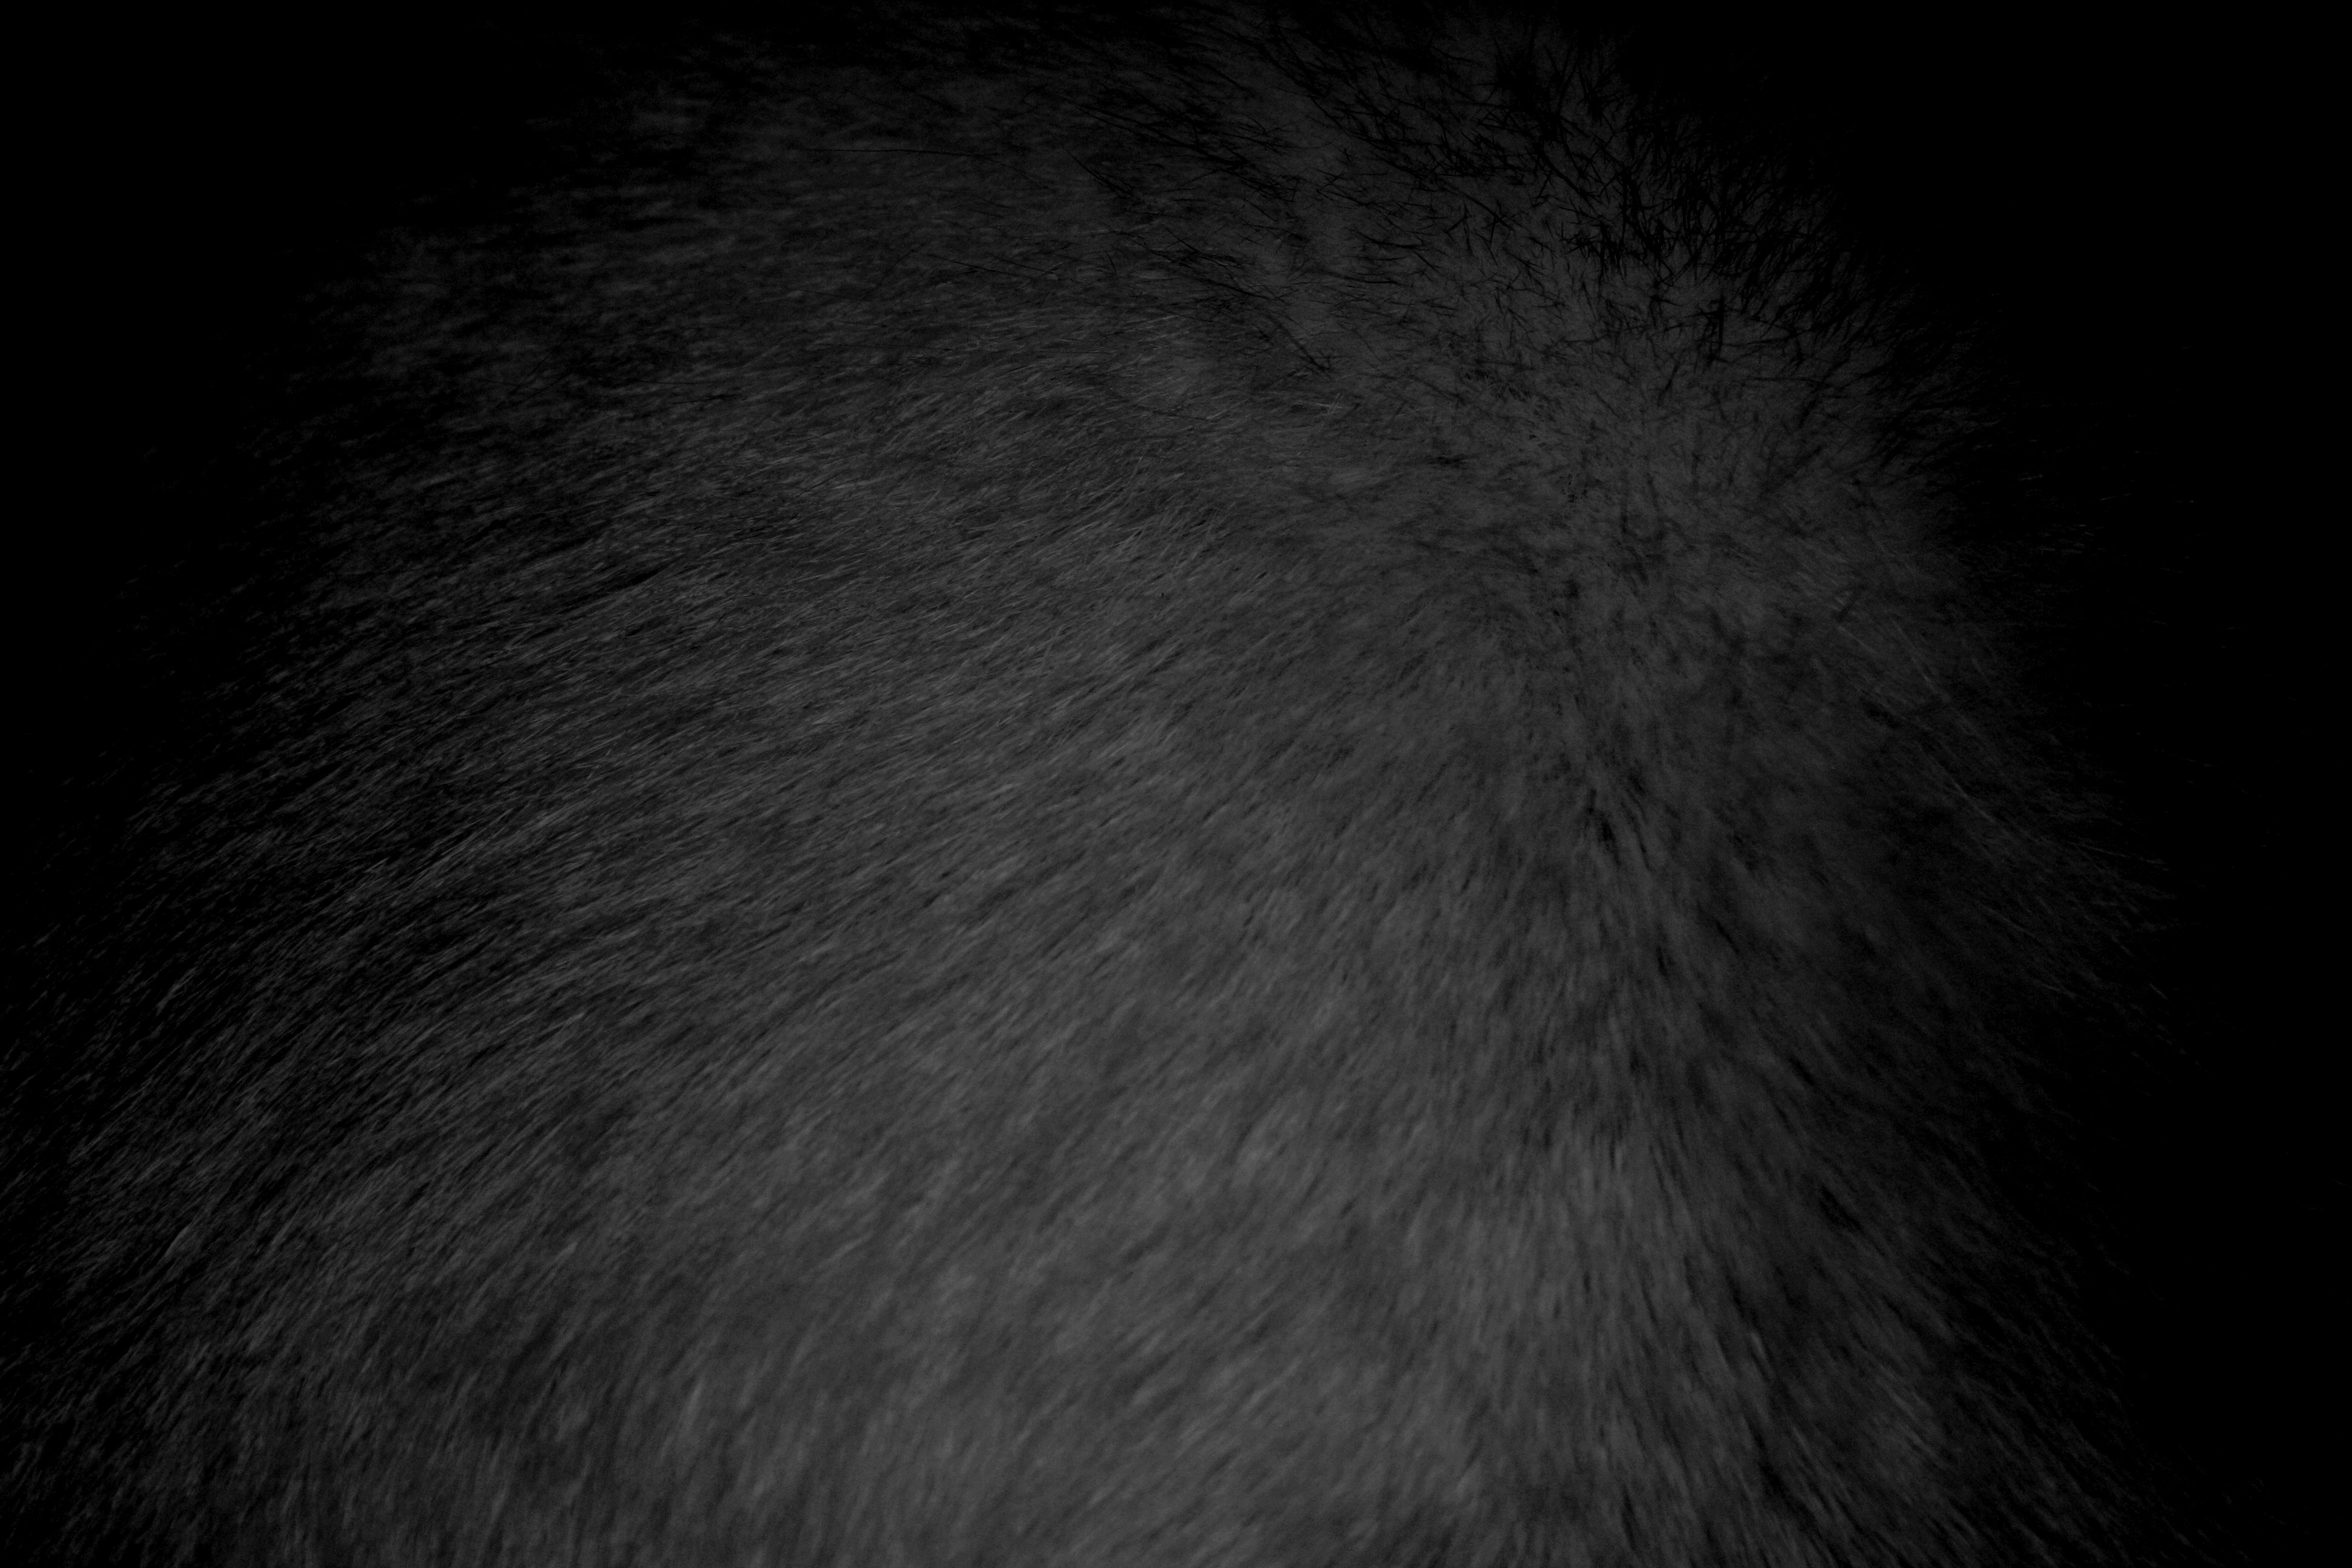 Black Fur Texture Picture, Free Photograph